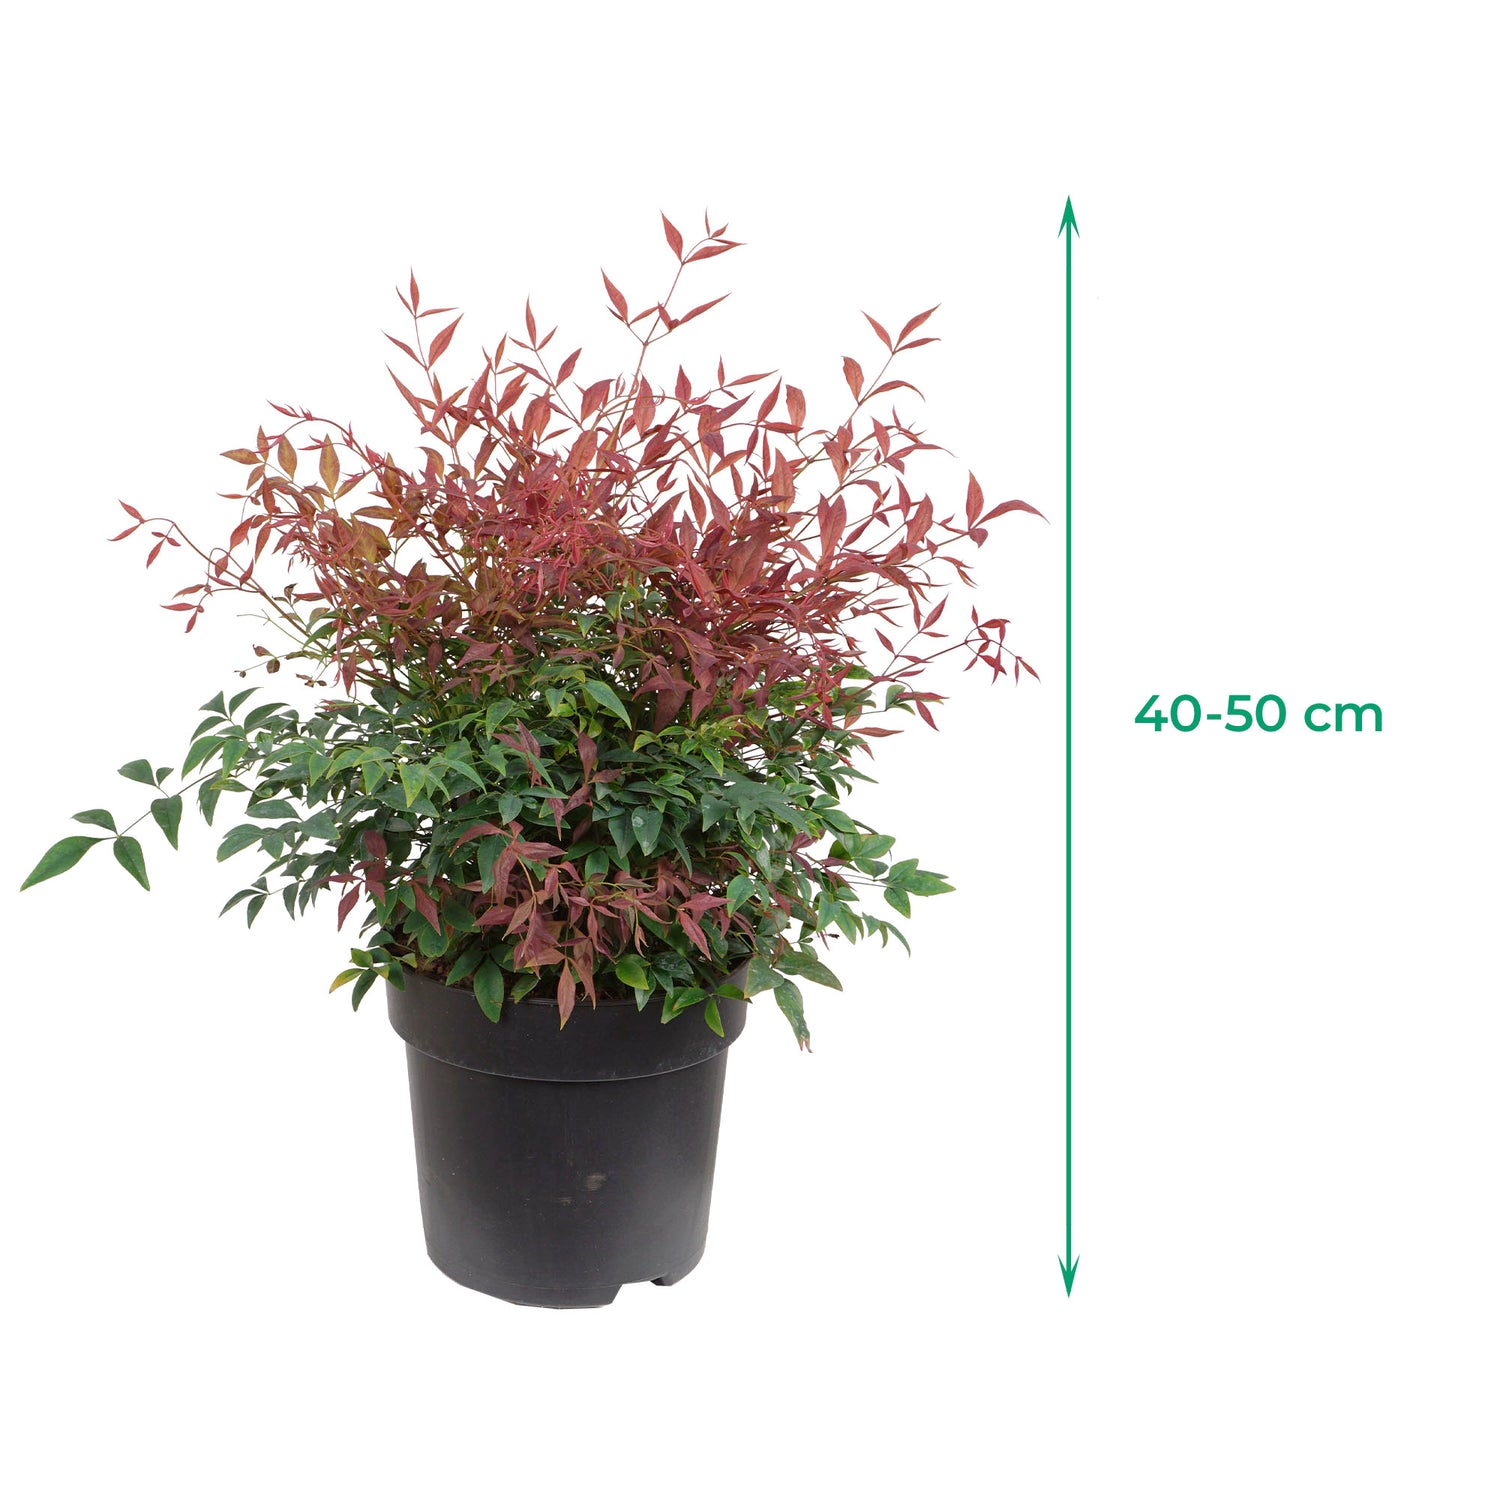 Himmelsbambus 'Obsessed' - Klein bleibende, immergrüne Sorte mit rotem Austrieb und leuchtend rotem Laub im Frühjahr, Höhe ca. 40-50 cm